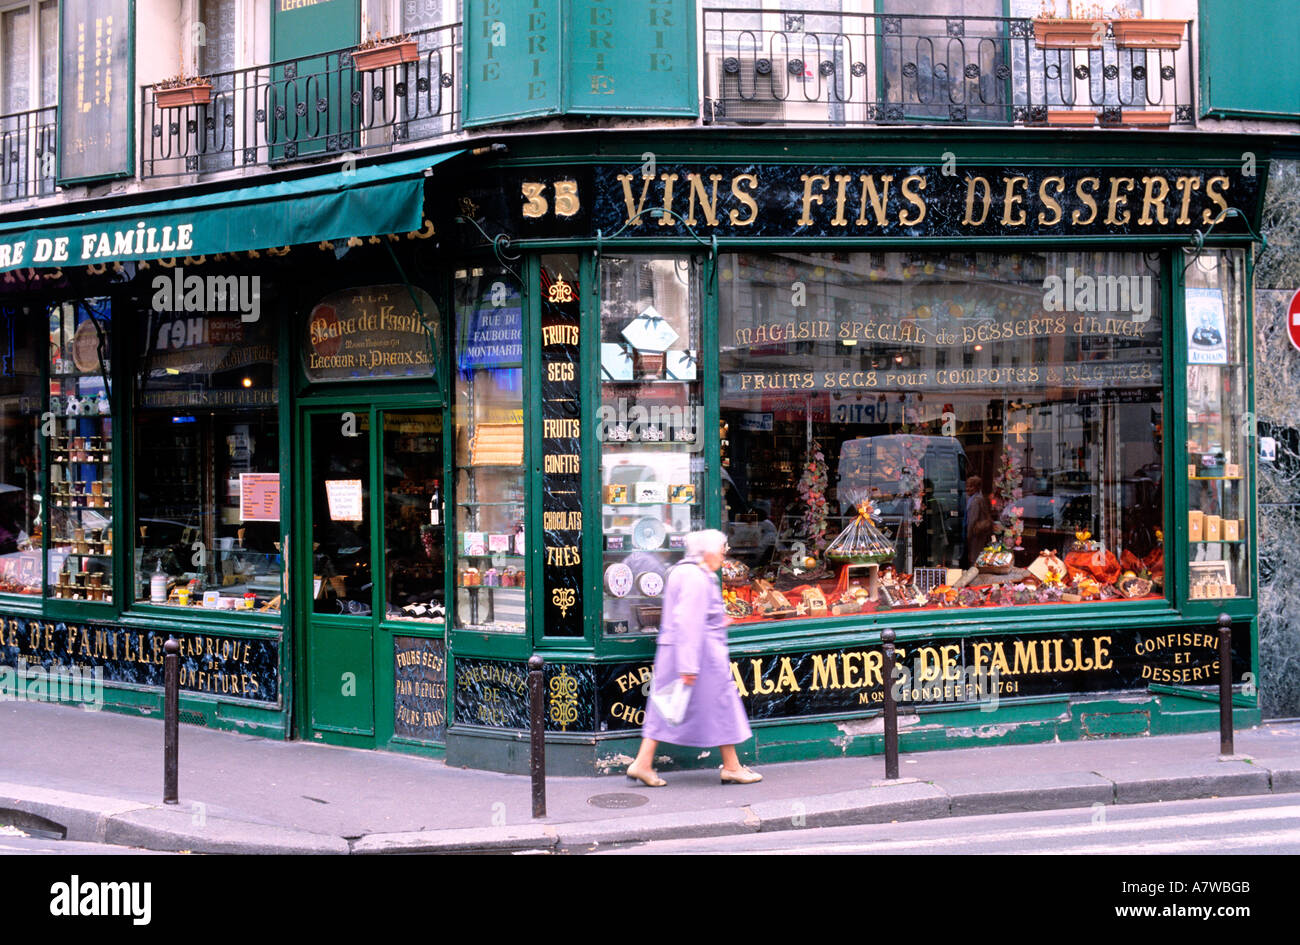 France, Paris, La mere de famille grocer's Stock Photo